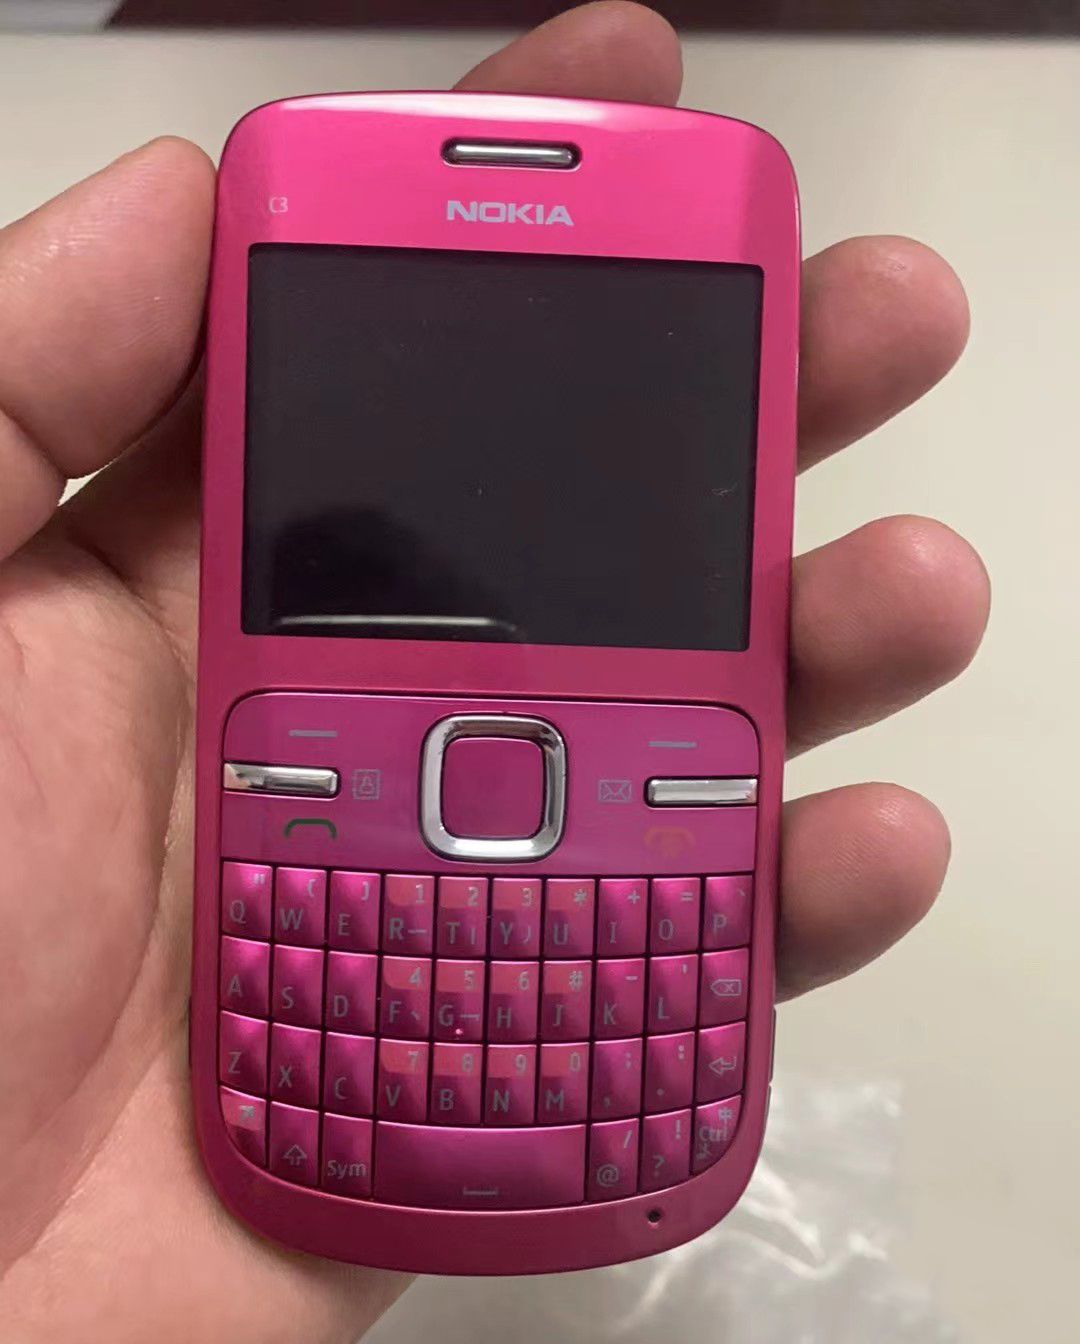 NokiaМобильныйтелефонC3-00,малиновый